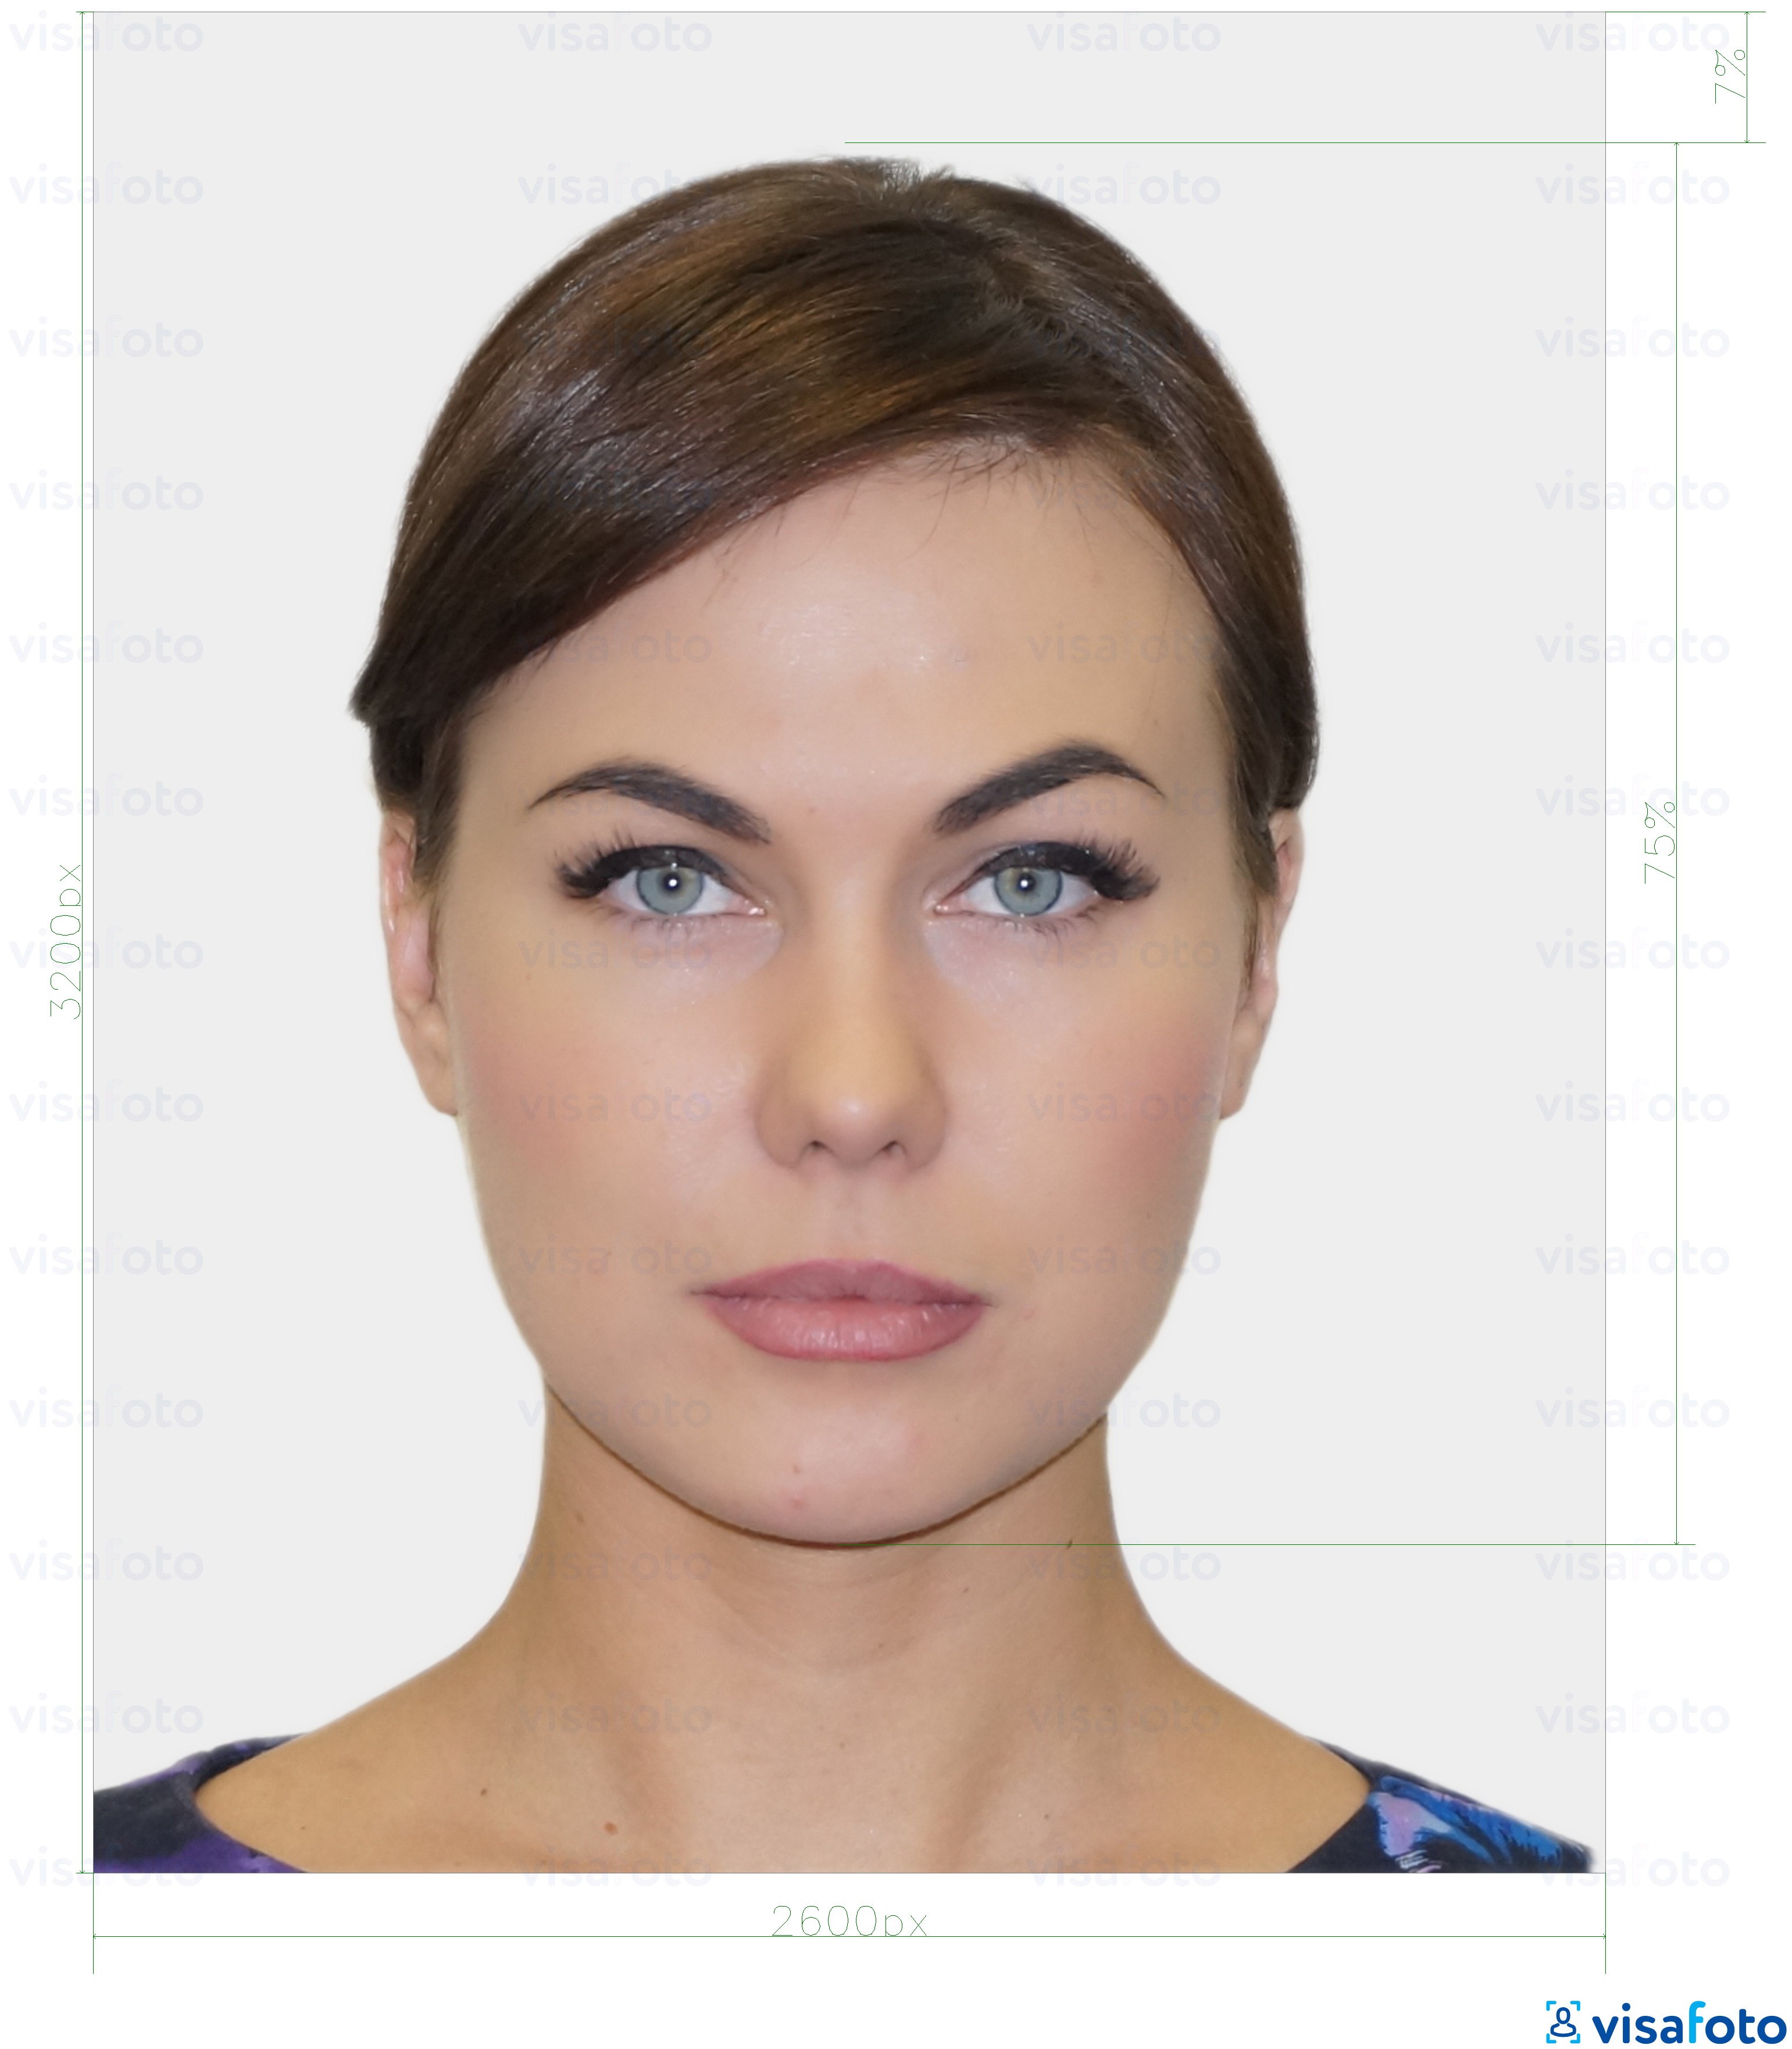 Fotobeispiel für Einwohner von Estland digitale Personalausweis 1300x1600 Pixel mit genauer größenangabe